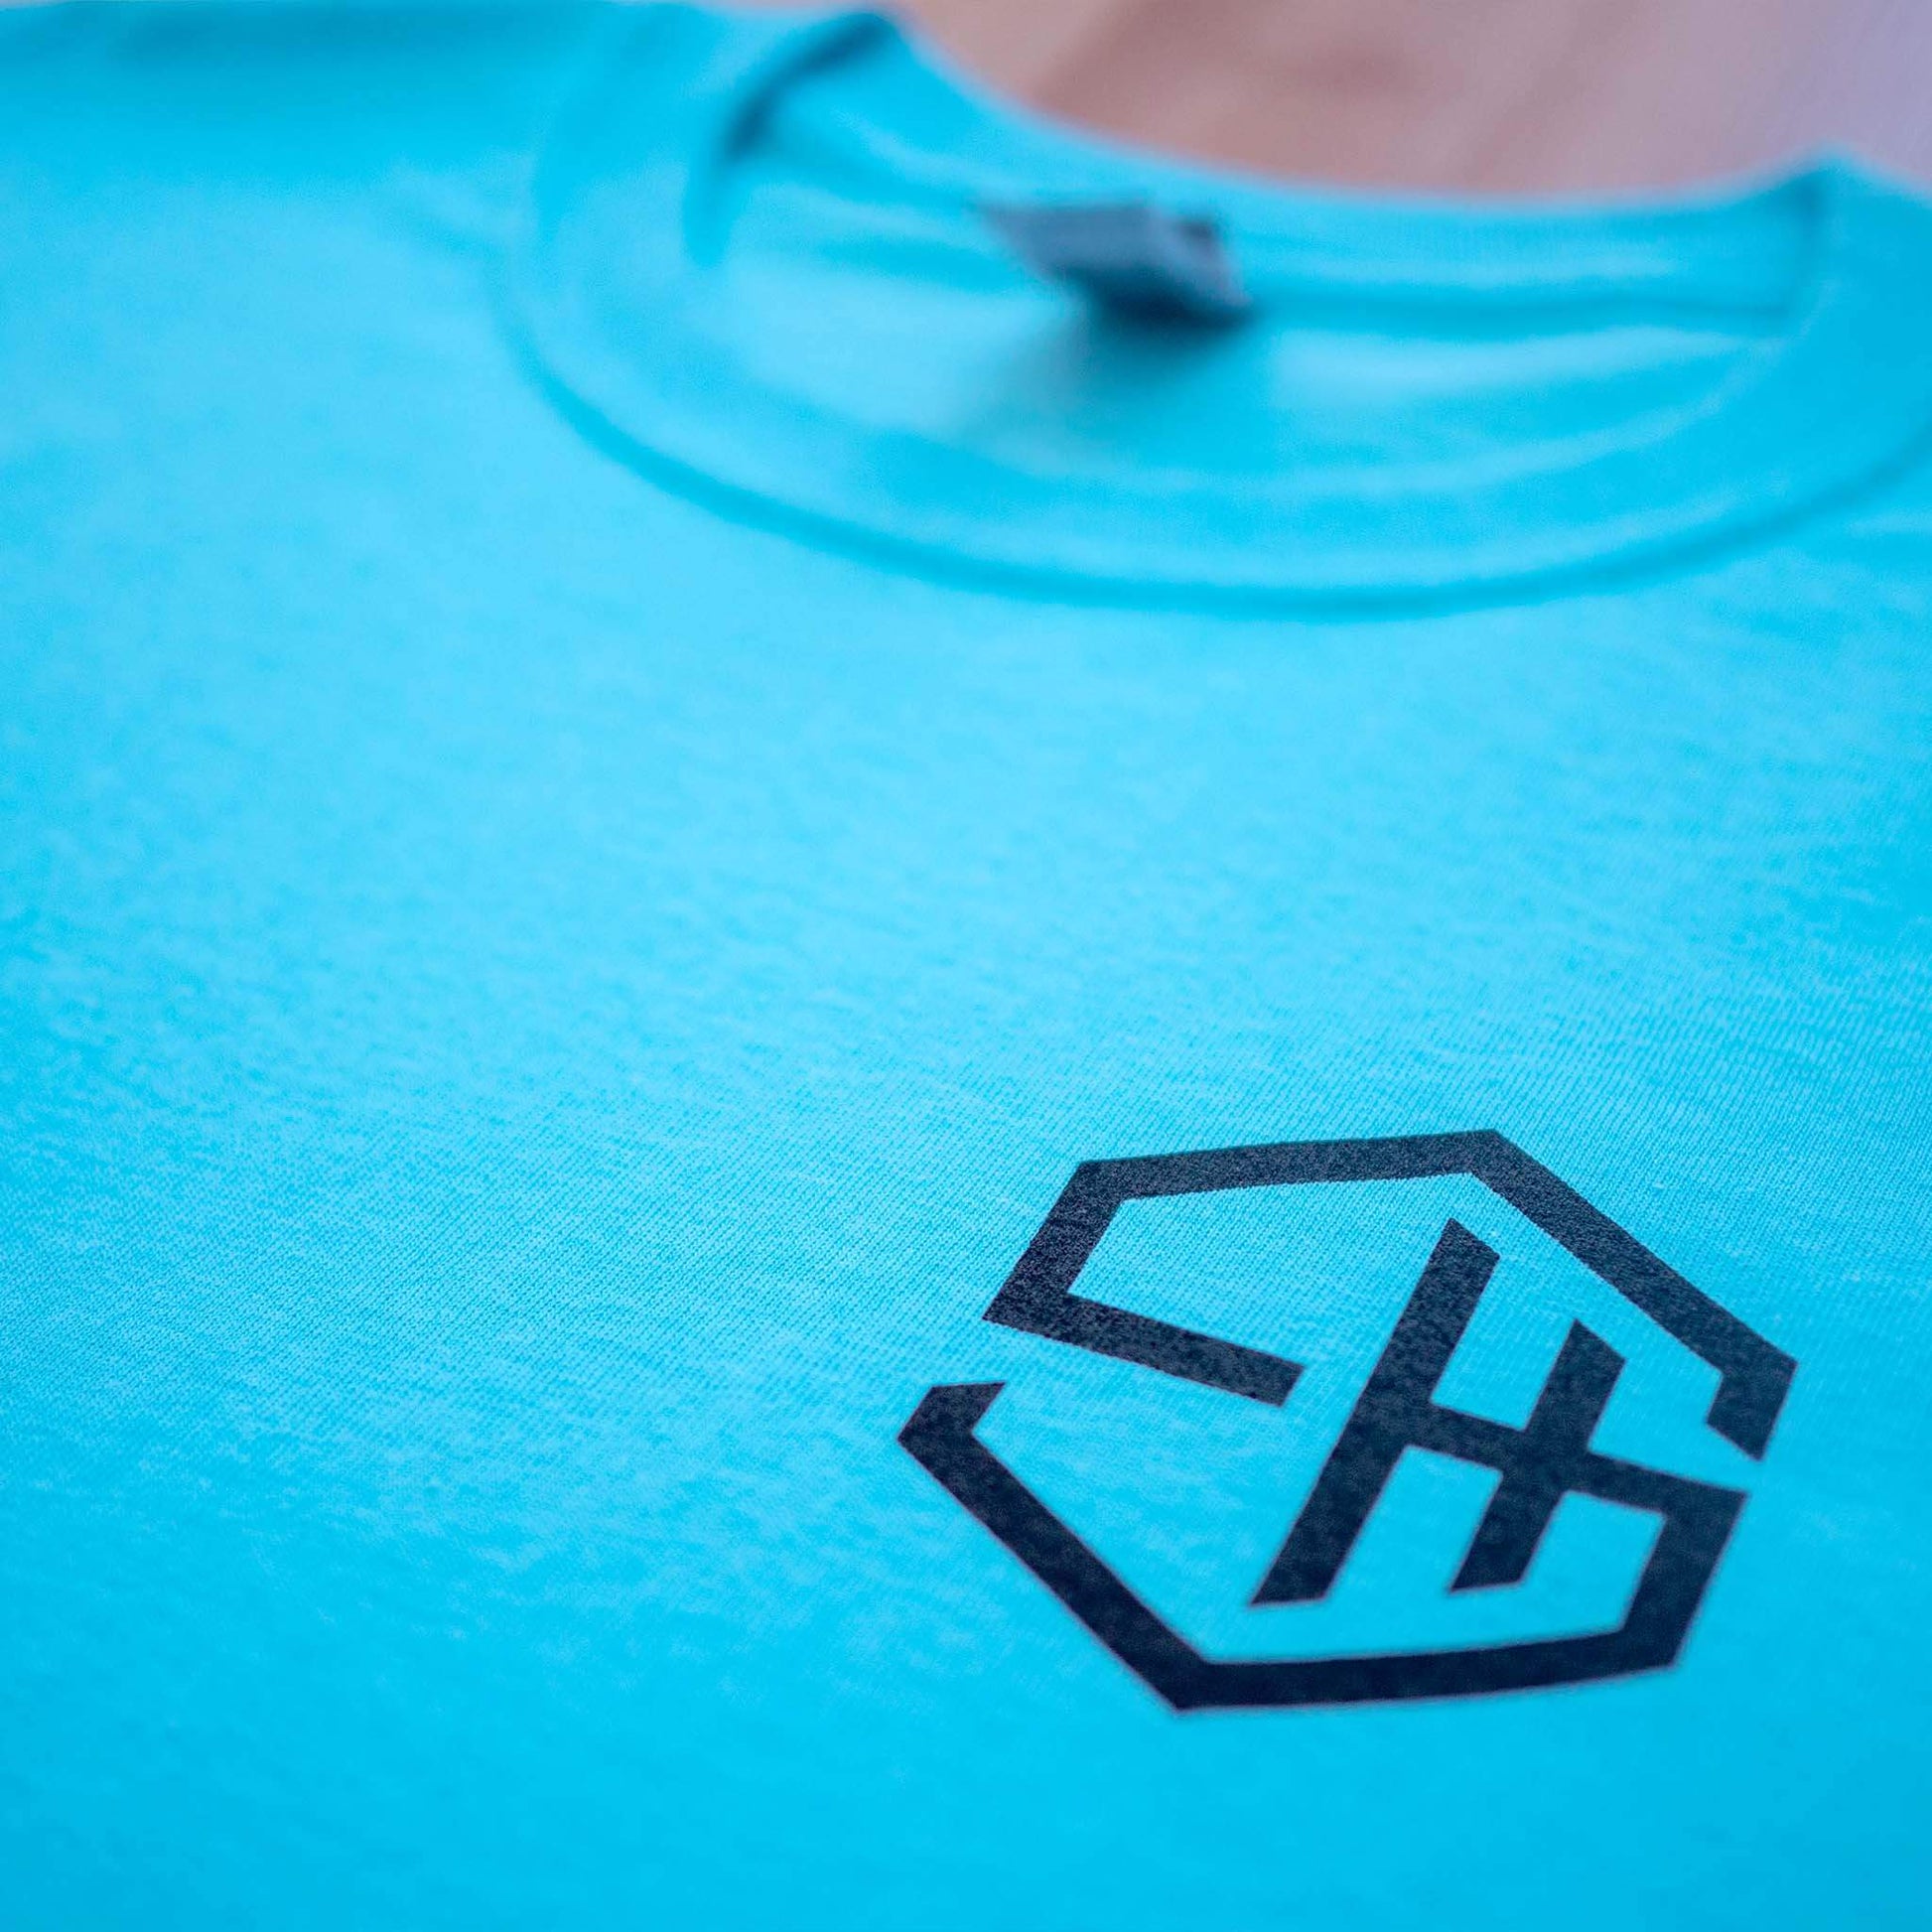 Subhustle logo chest print detail on sky blue acid house music tee design